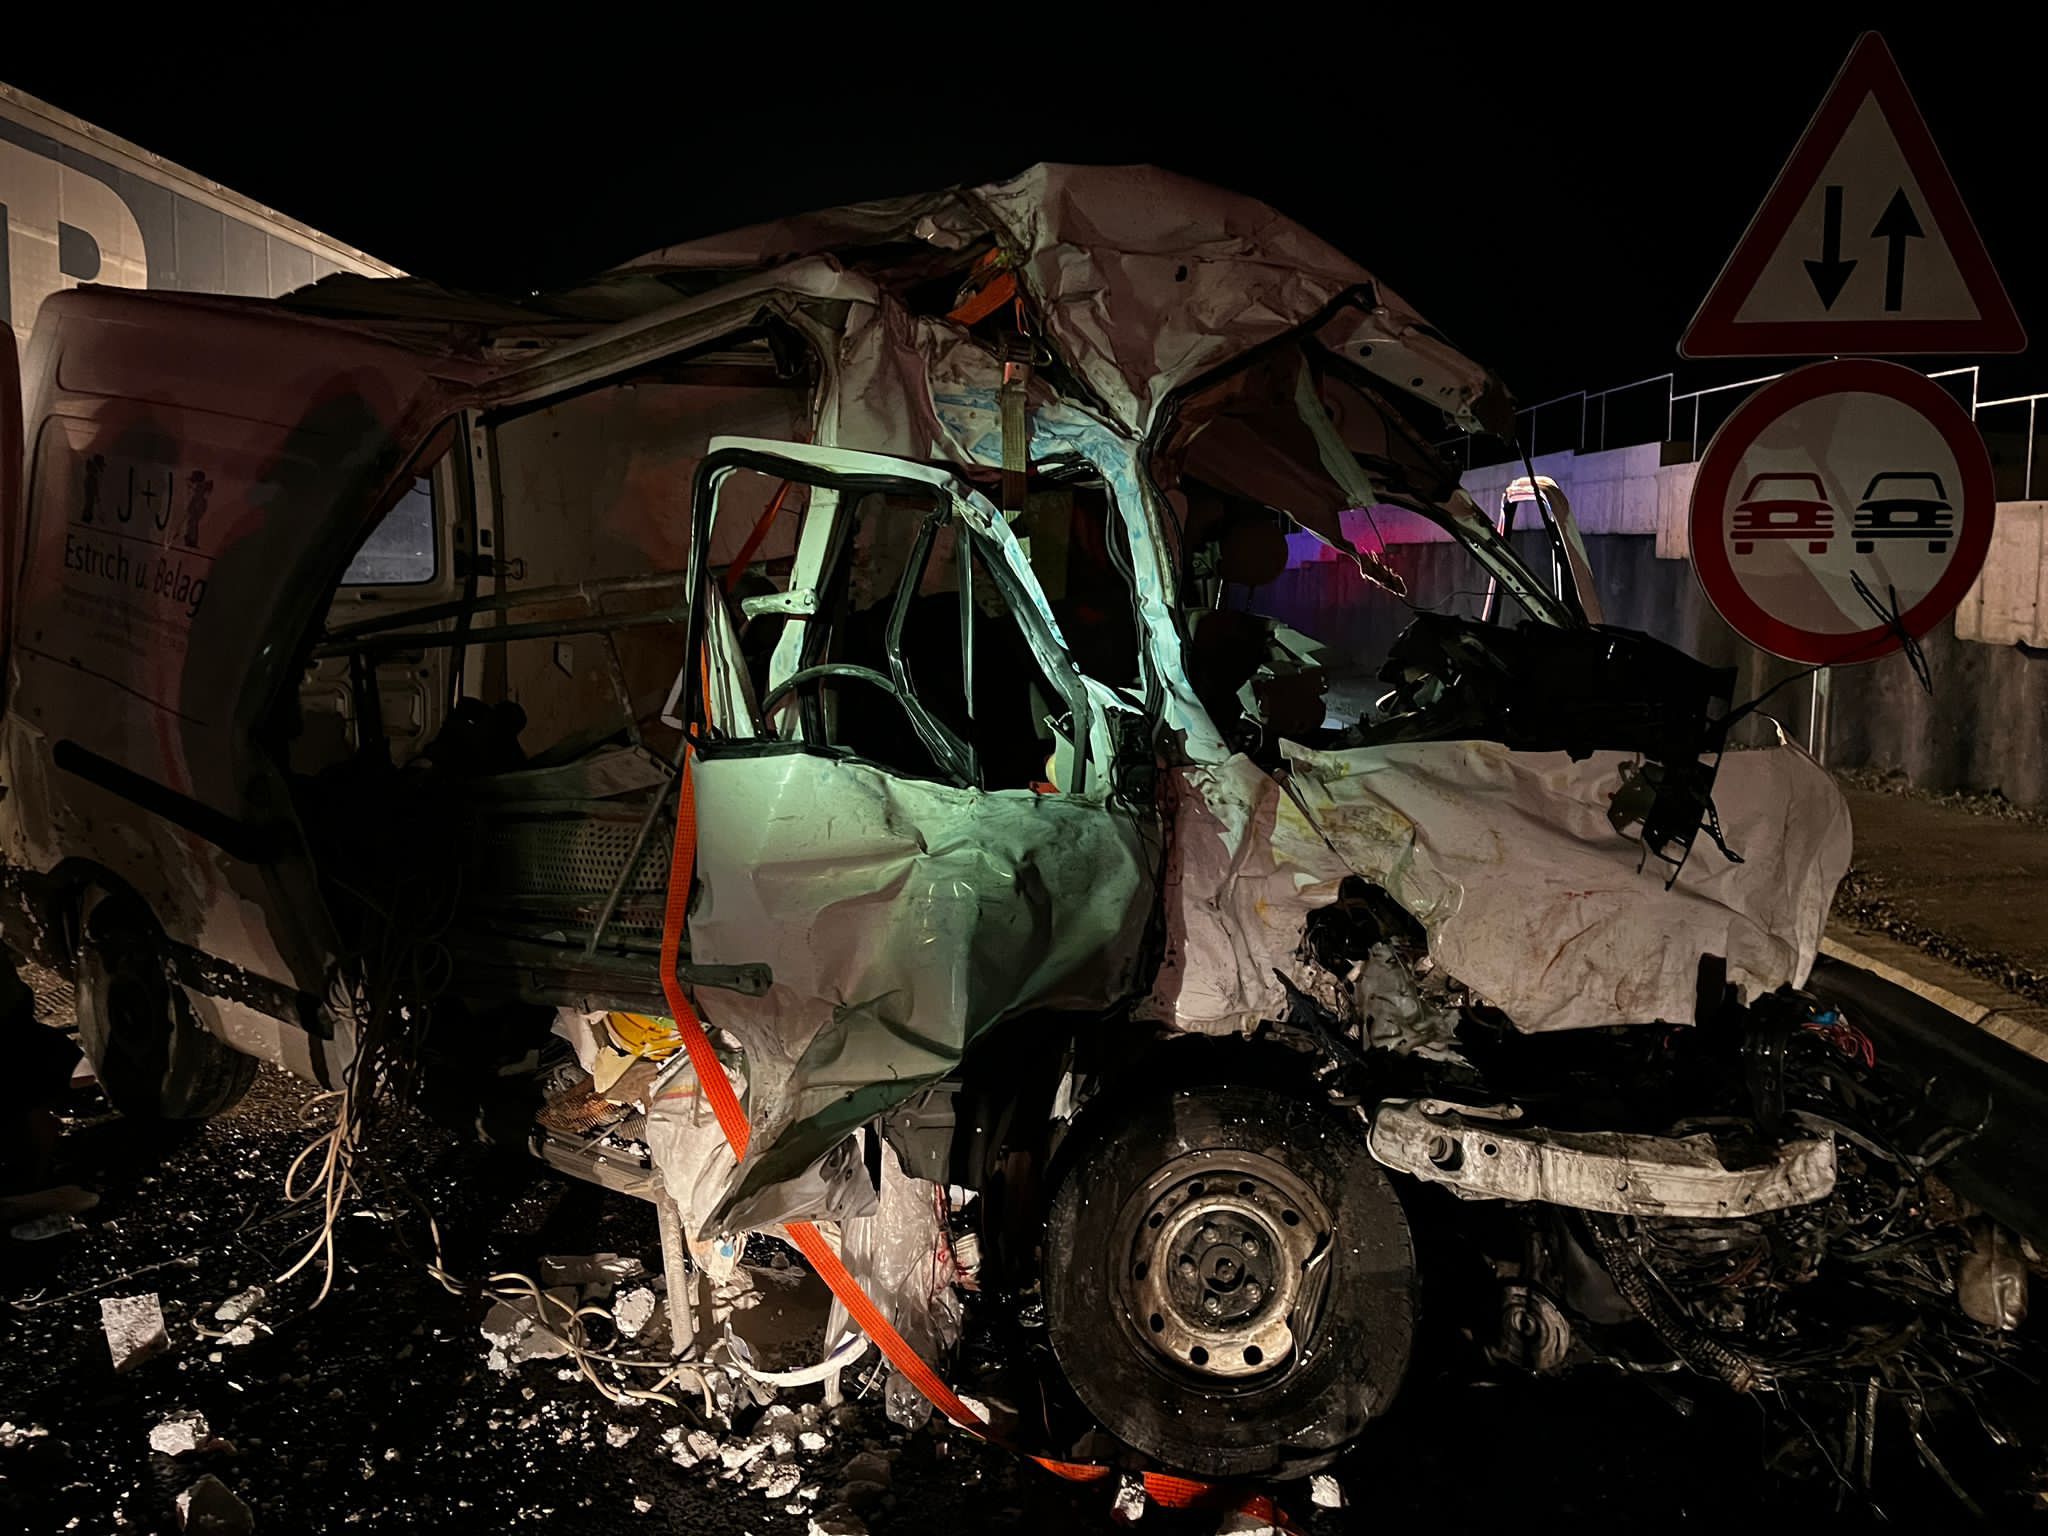 foto: accident grav pe autostradă în zona boița - doi tineri au murit